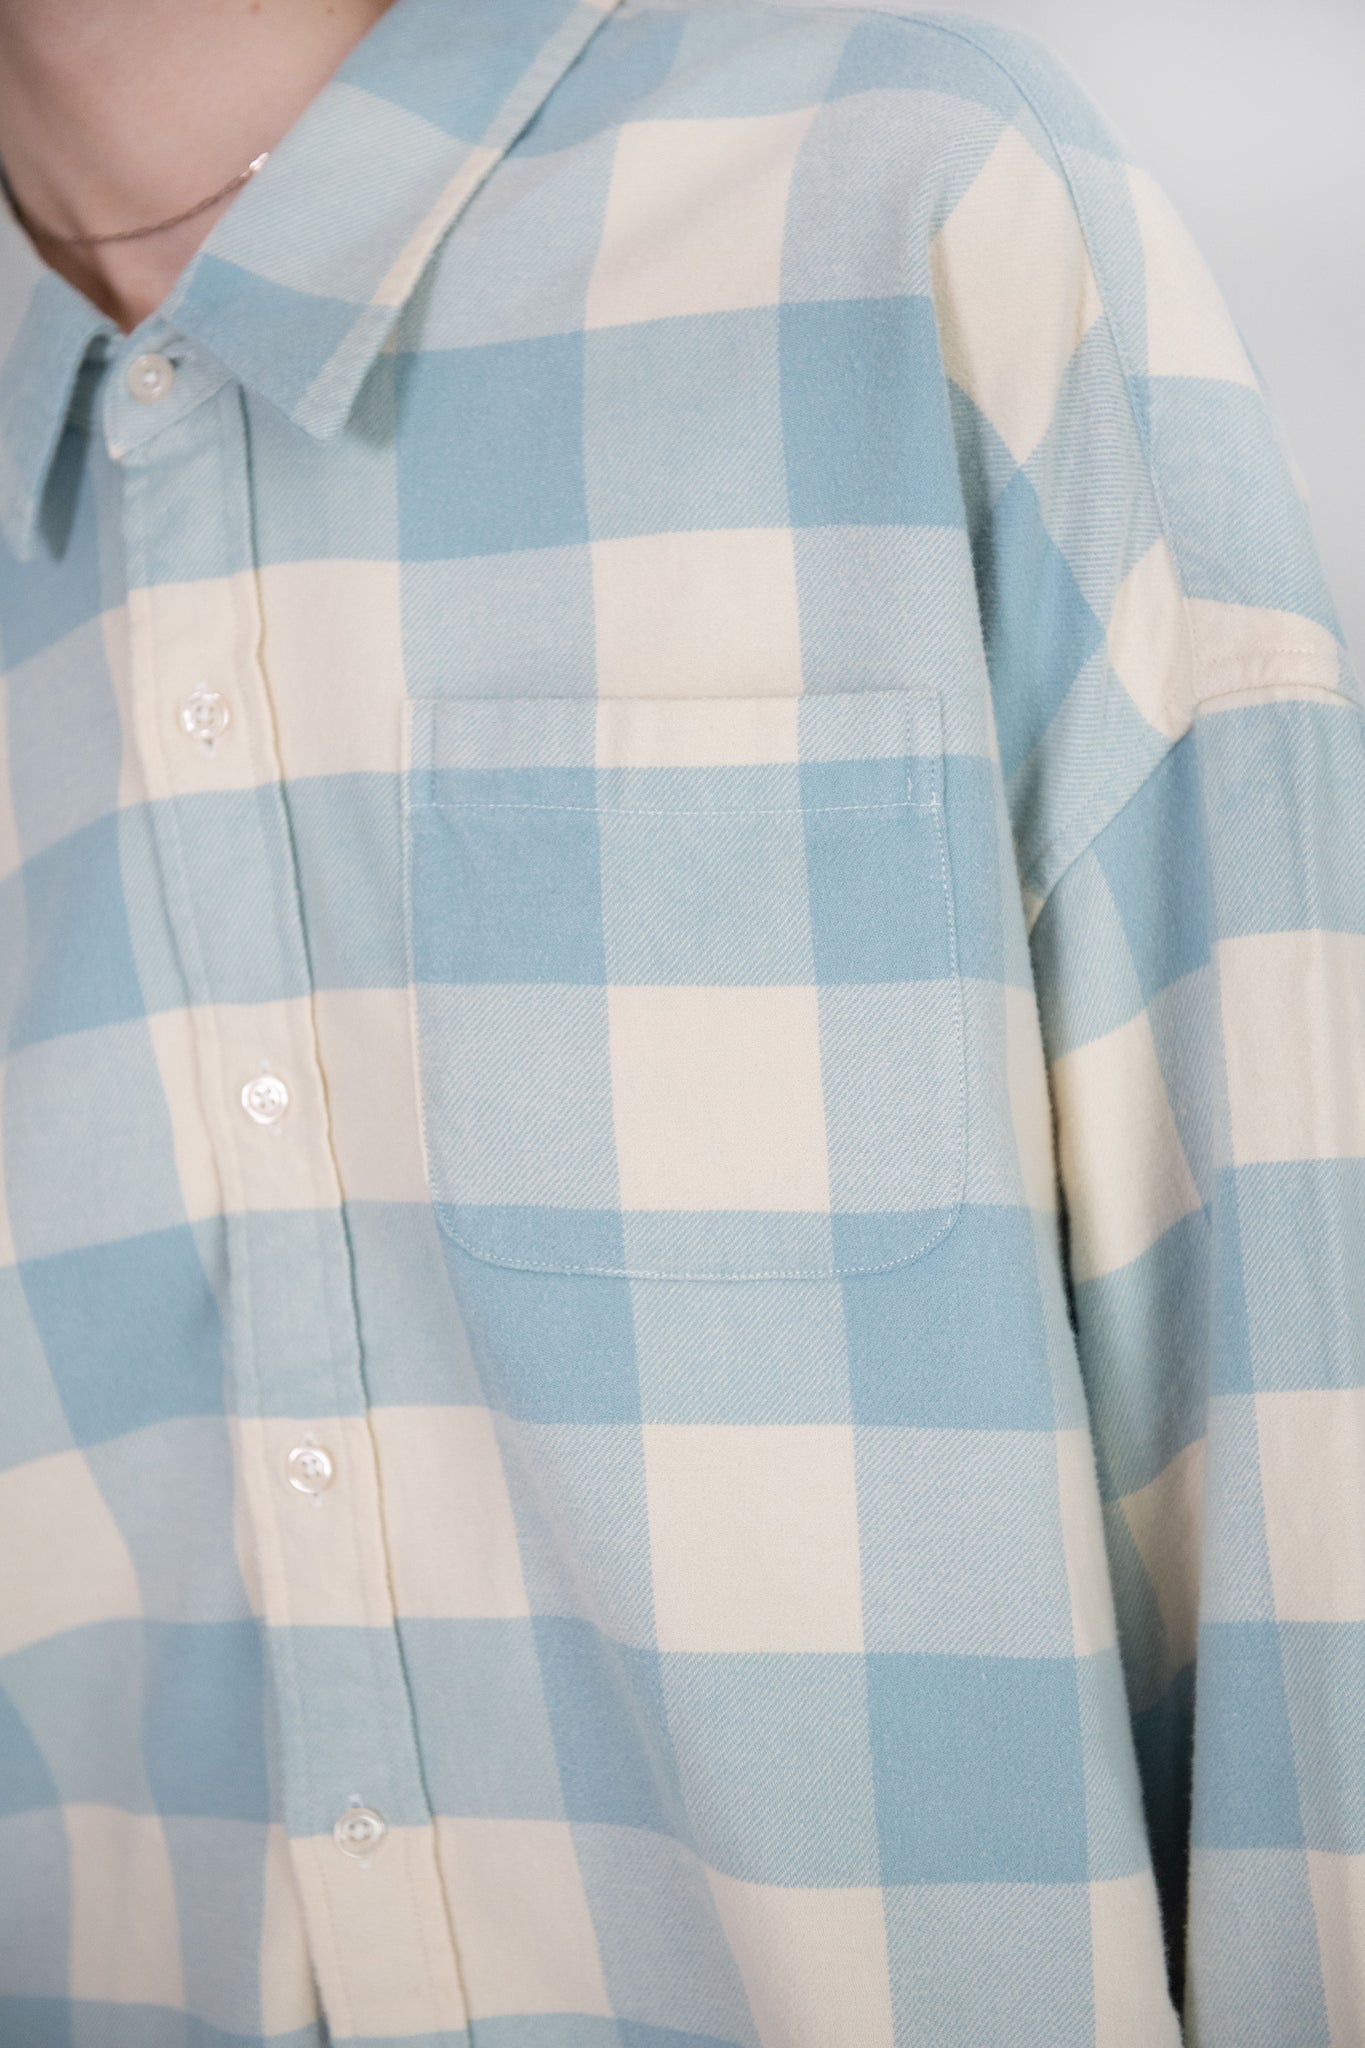 DENIMIST - Cropped Button Front Shirt, Light Blue & Ecru Buffalo